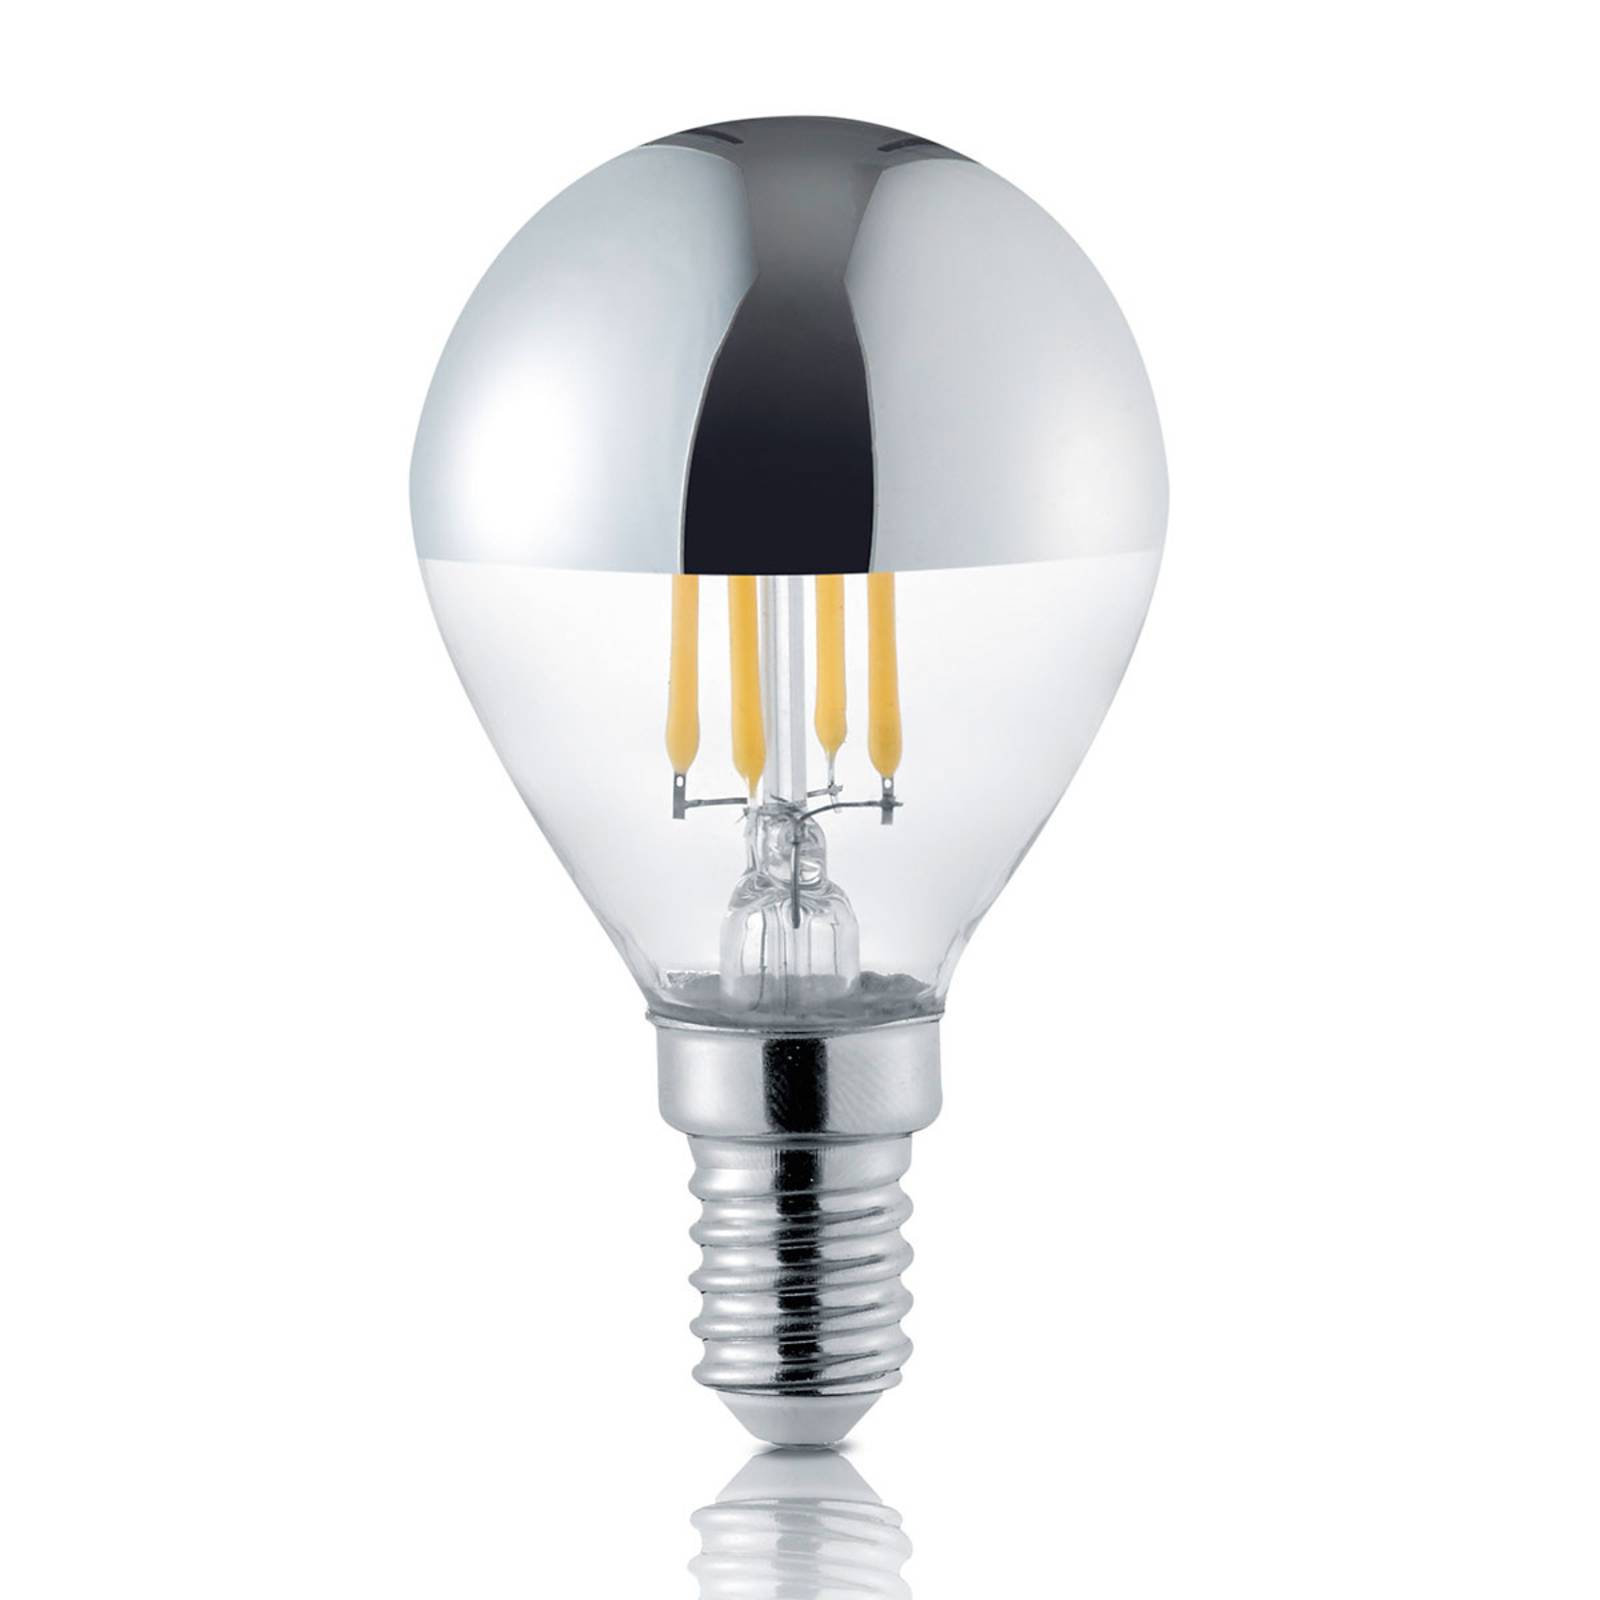 Trio Lighting LED-Lampe E14 4W mit Kopfspiegel, 2.800K